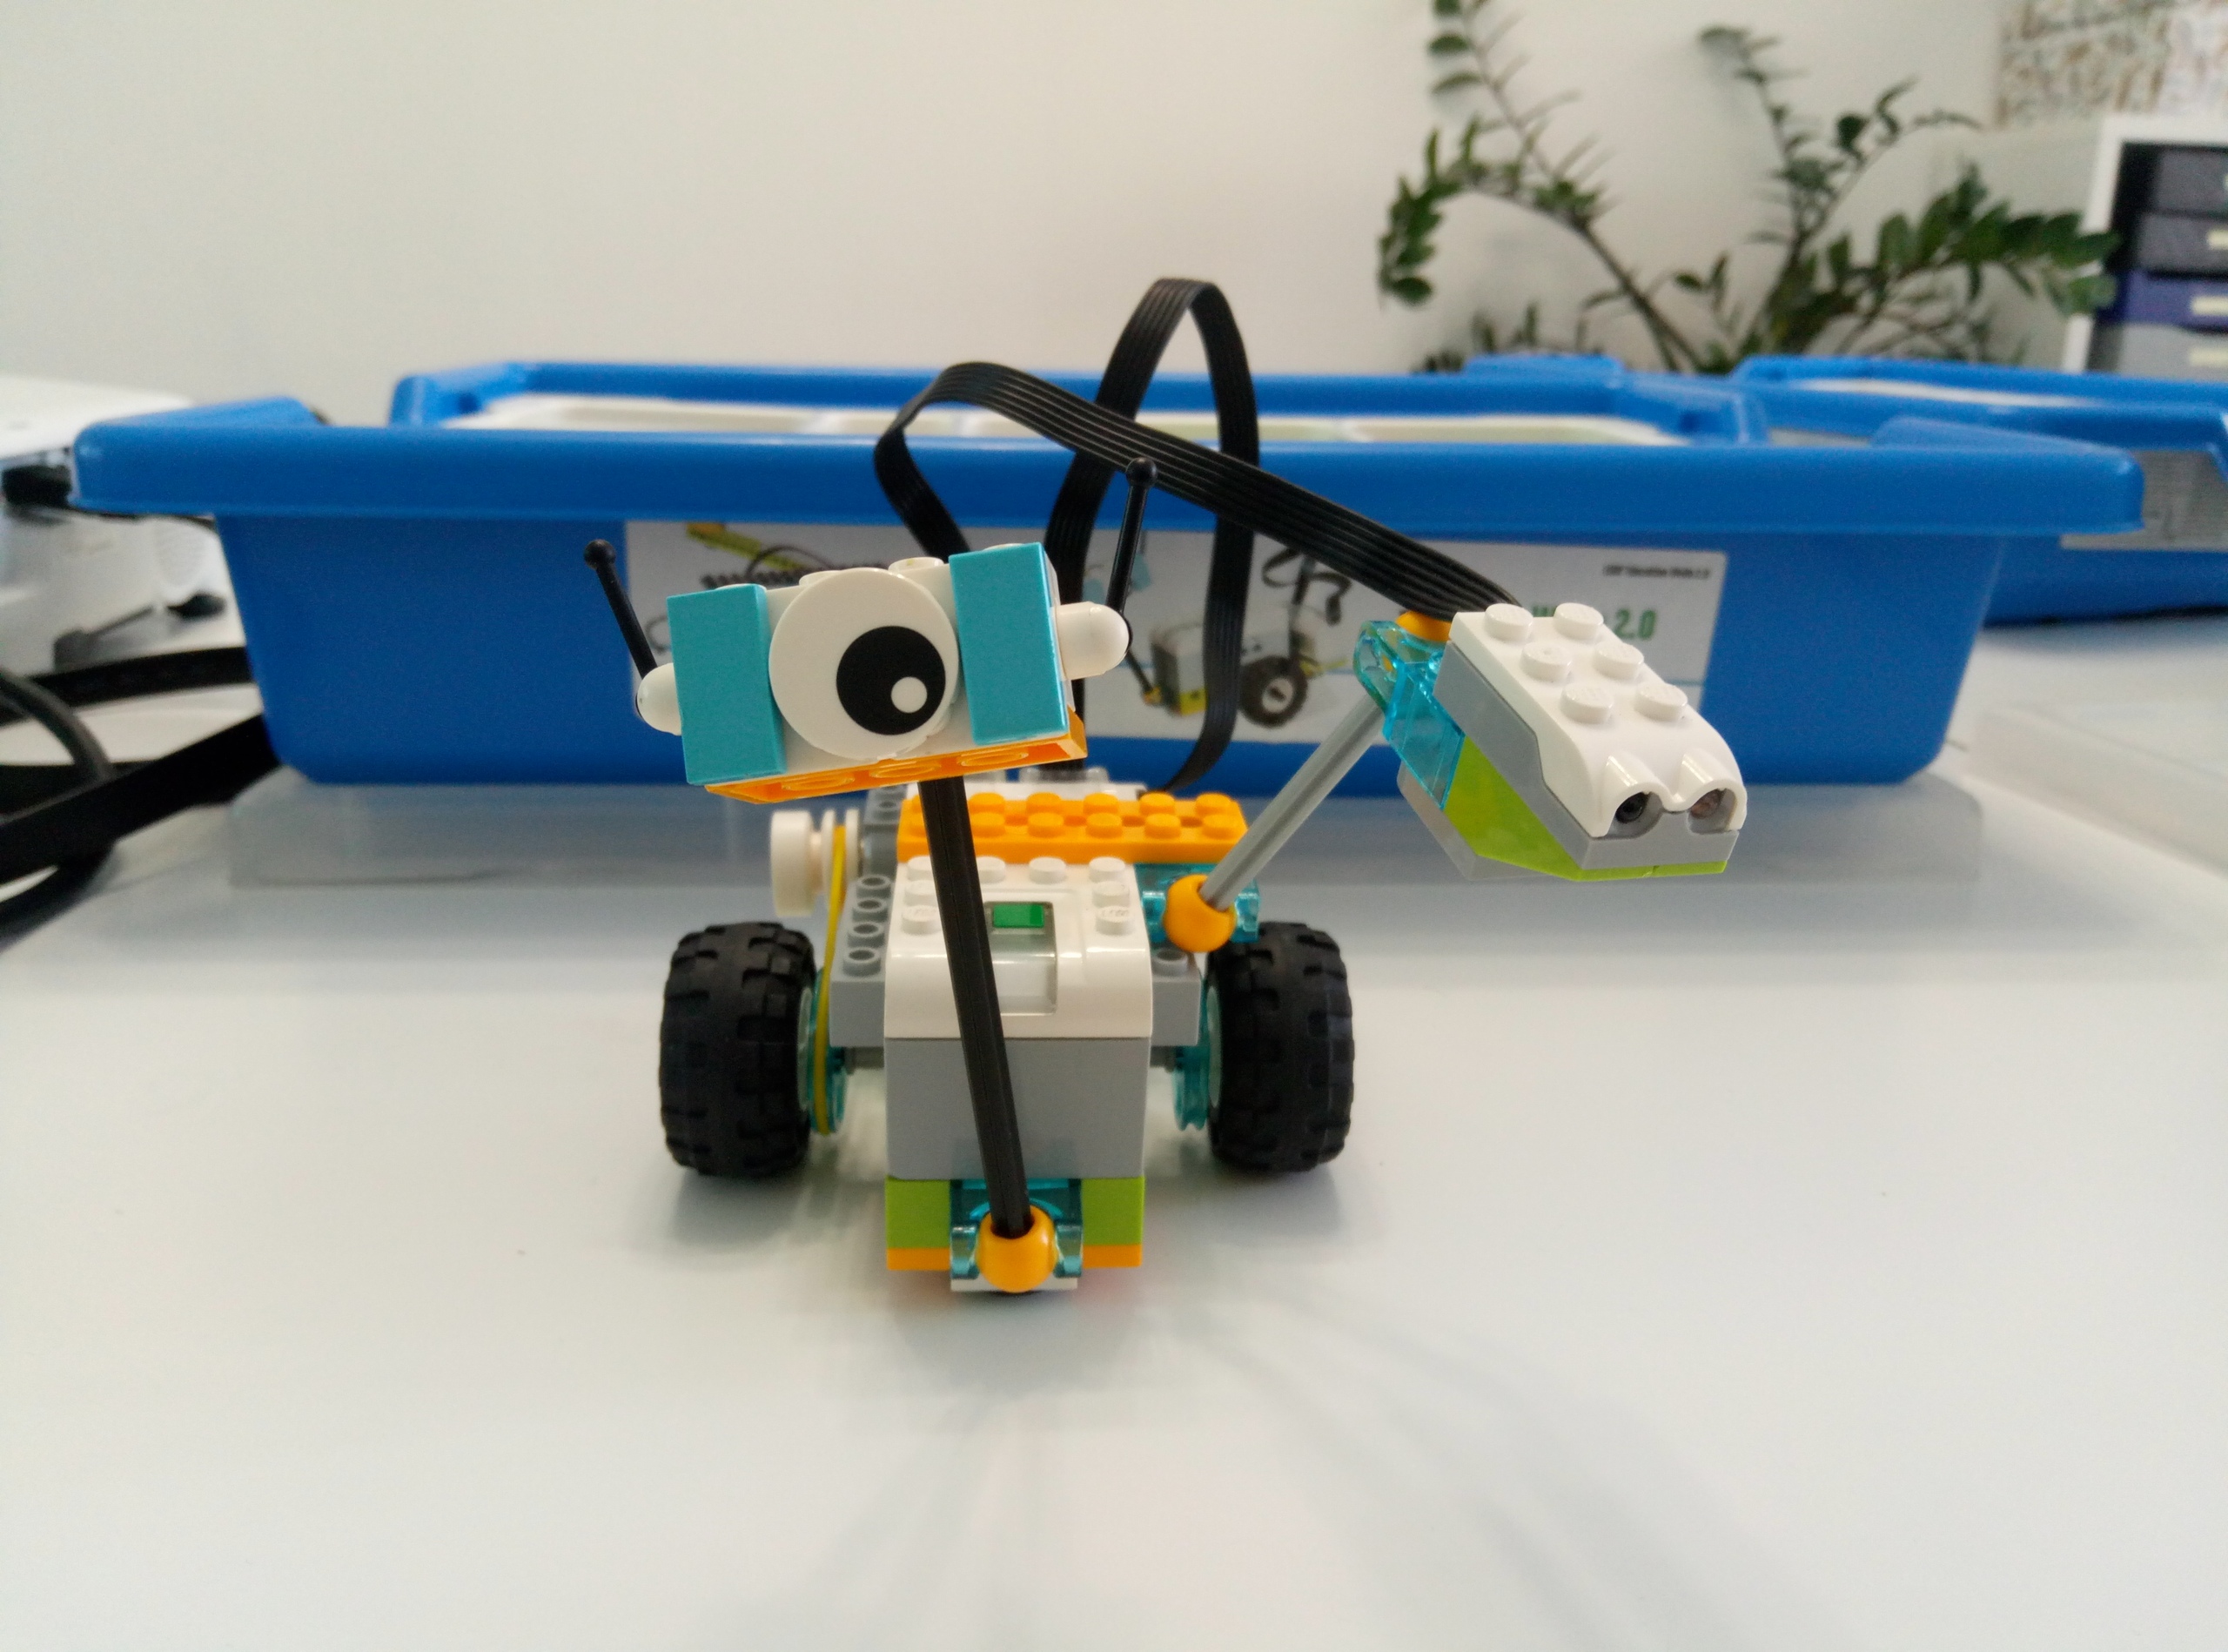 Building instructions Lego Wedo 2.0 - Roboinstruction.com